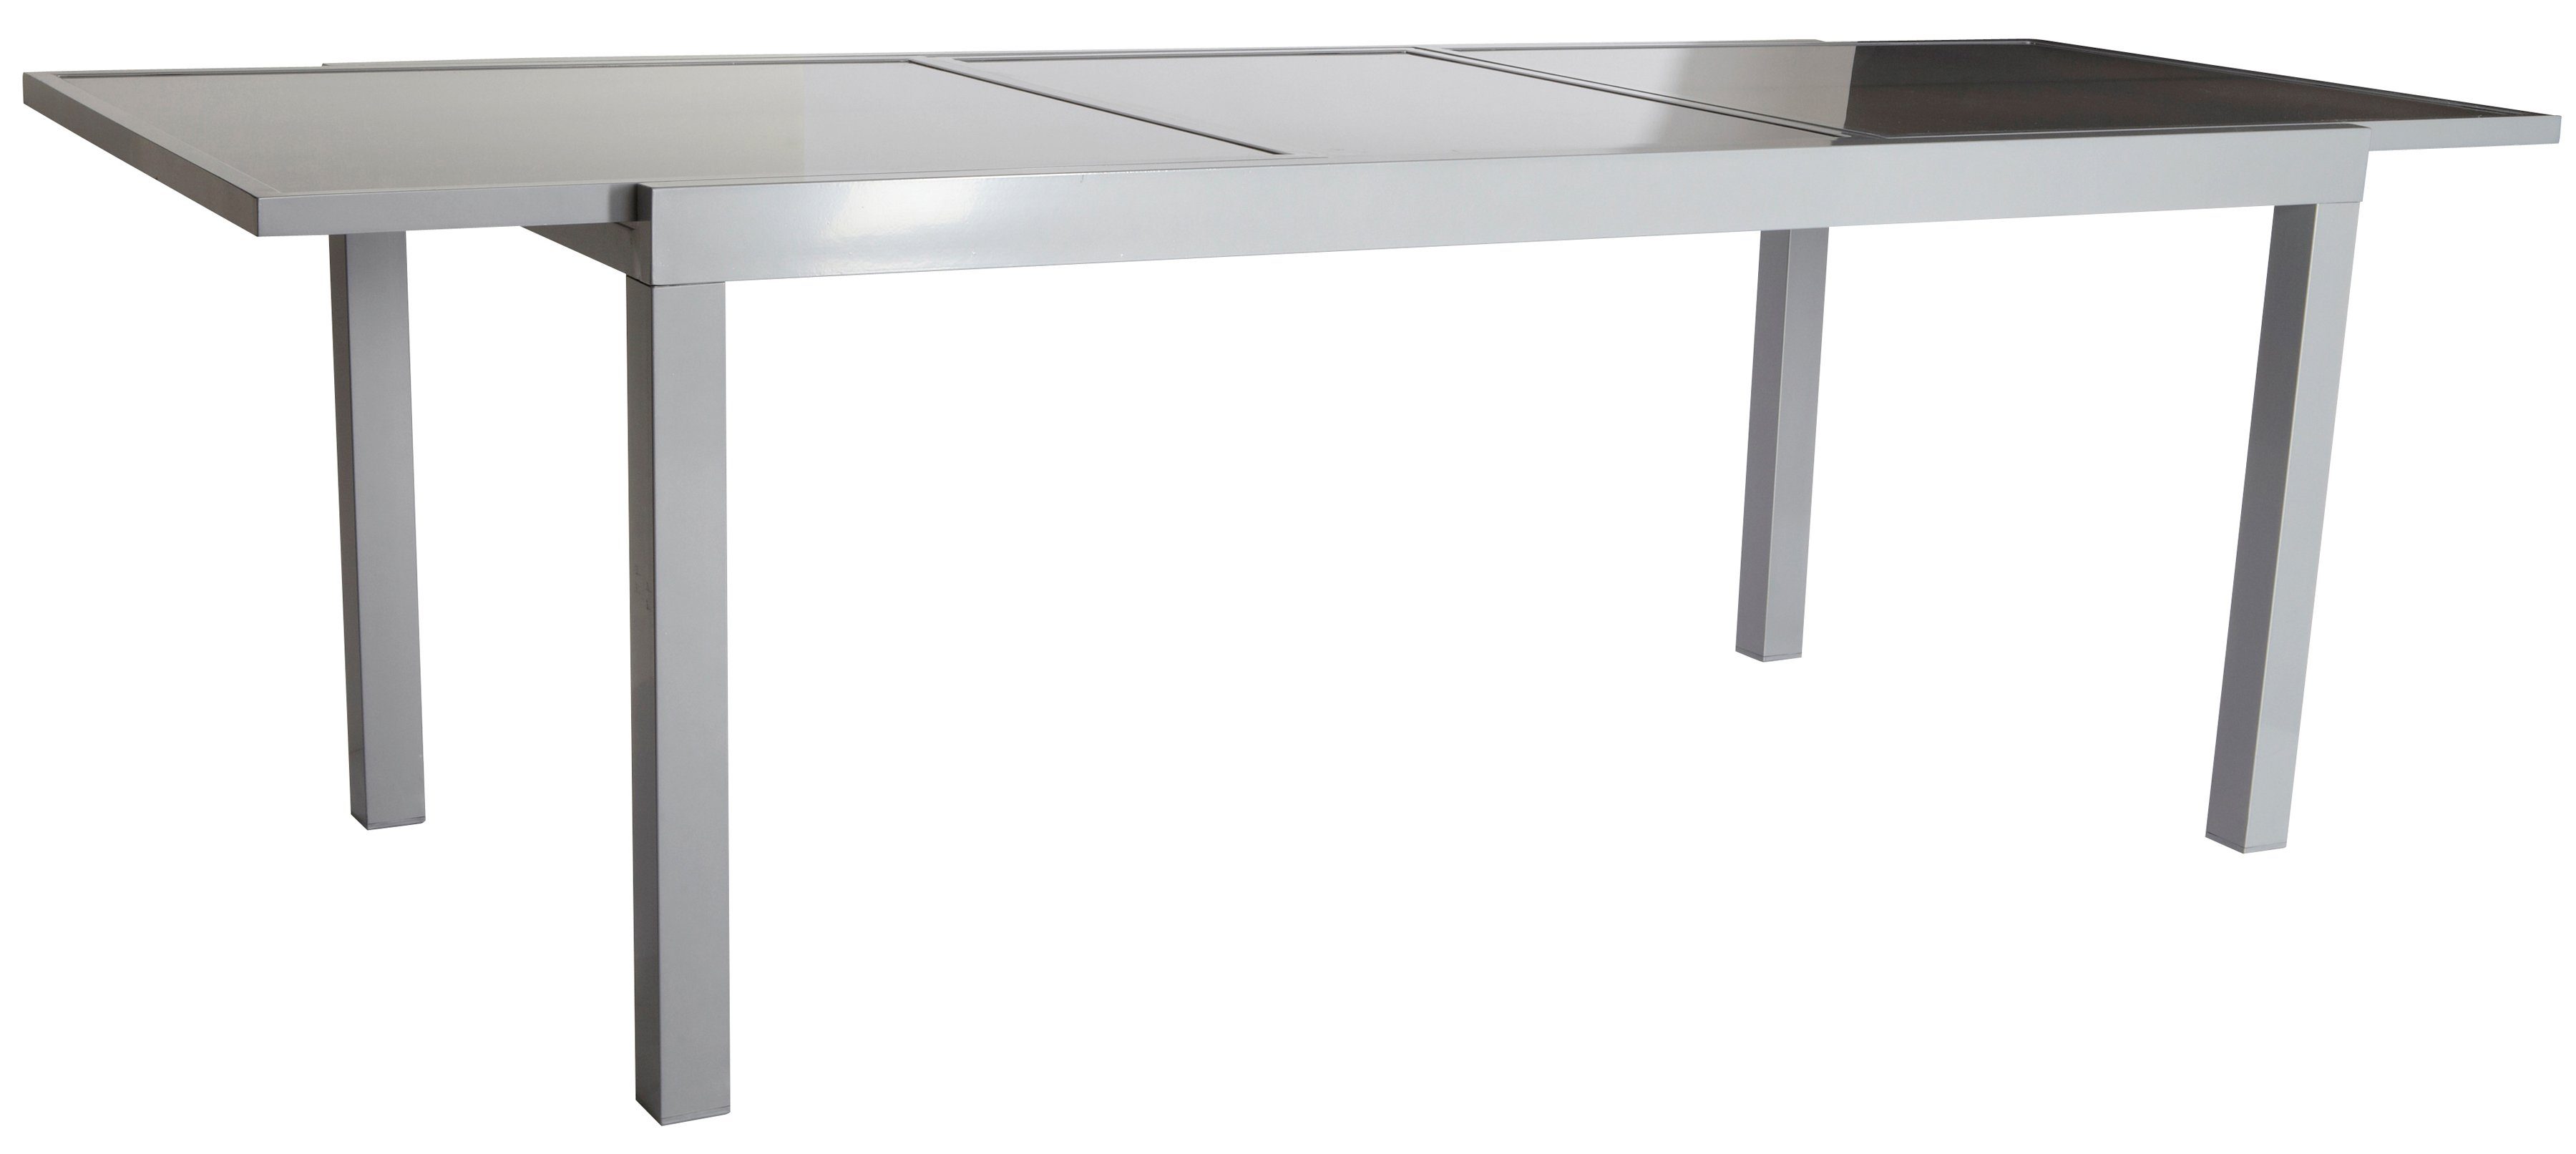 MERXX Gartentisch je Variante nach hellgrau ausziehbar 180-240cm Amalfi, auf